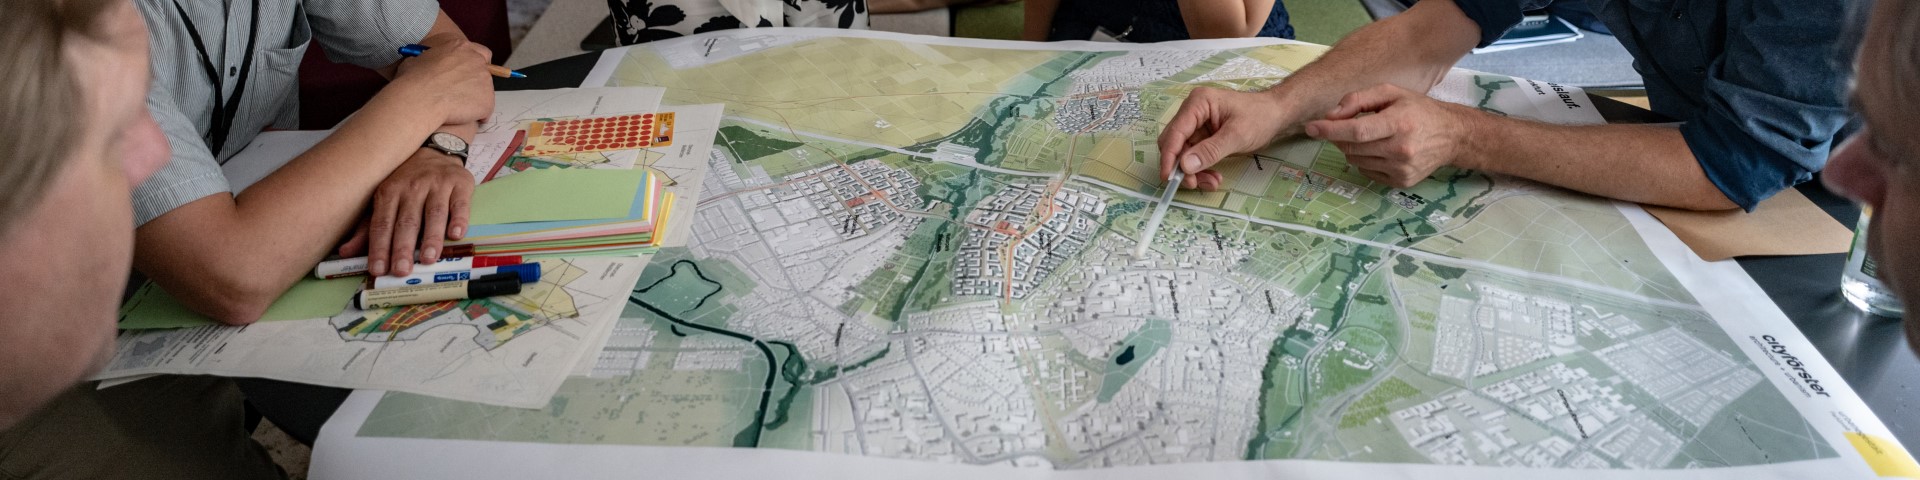 Mehrere Personen sitzen um einen Stadtplan herum und markieren darauf Orte.